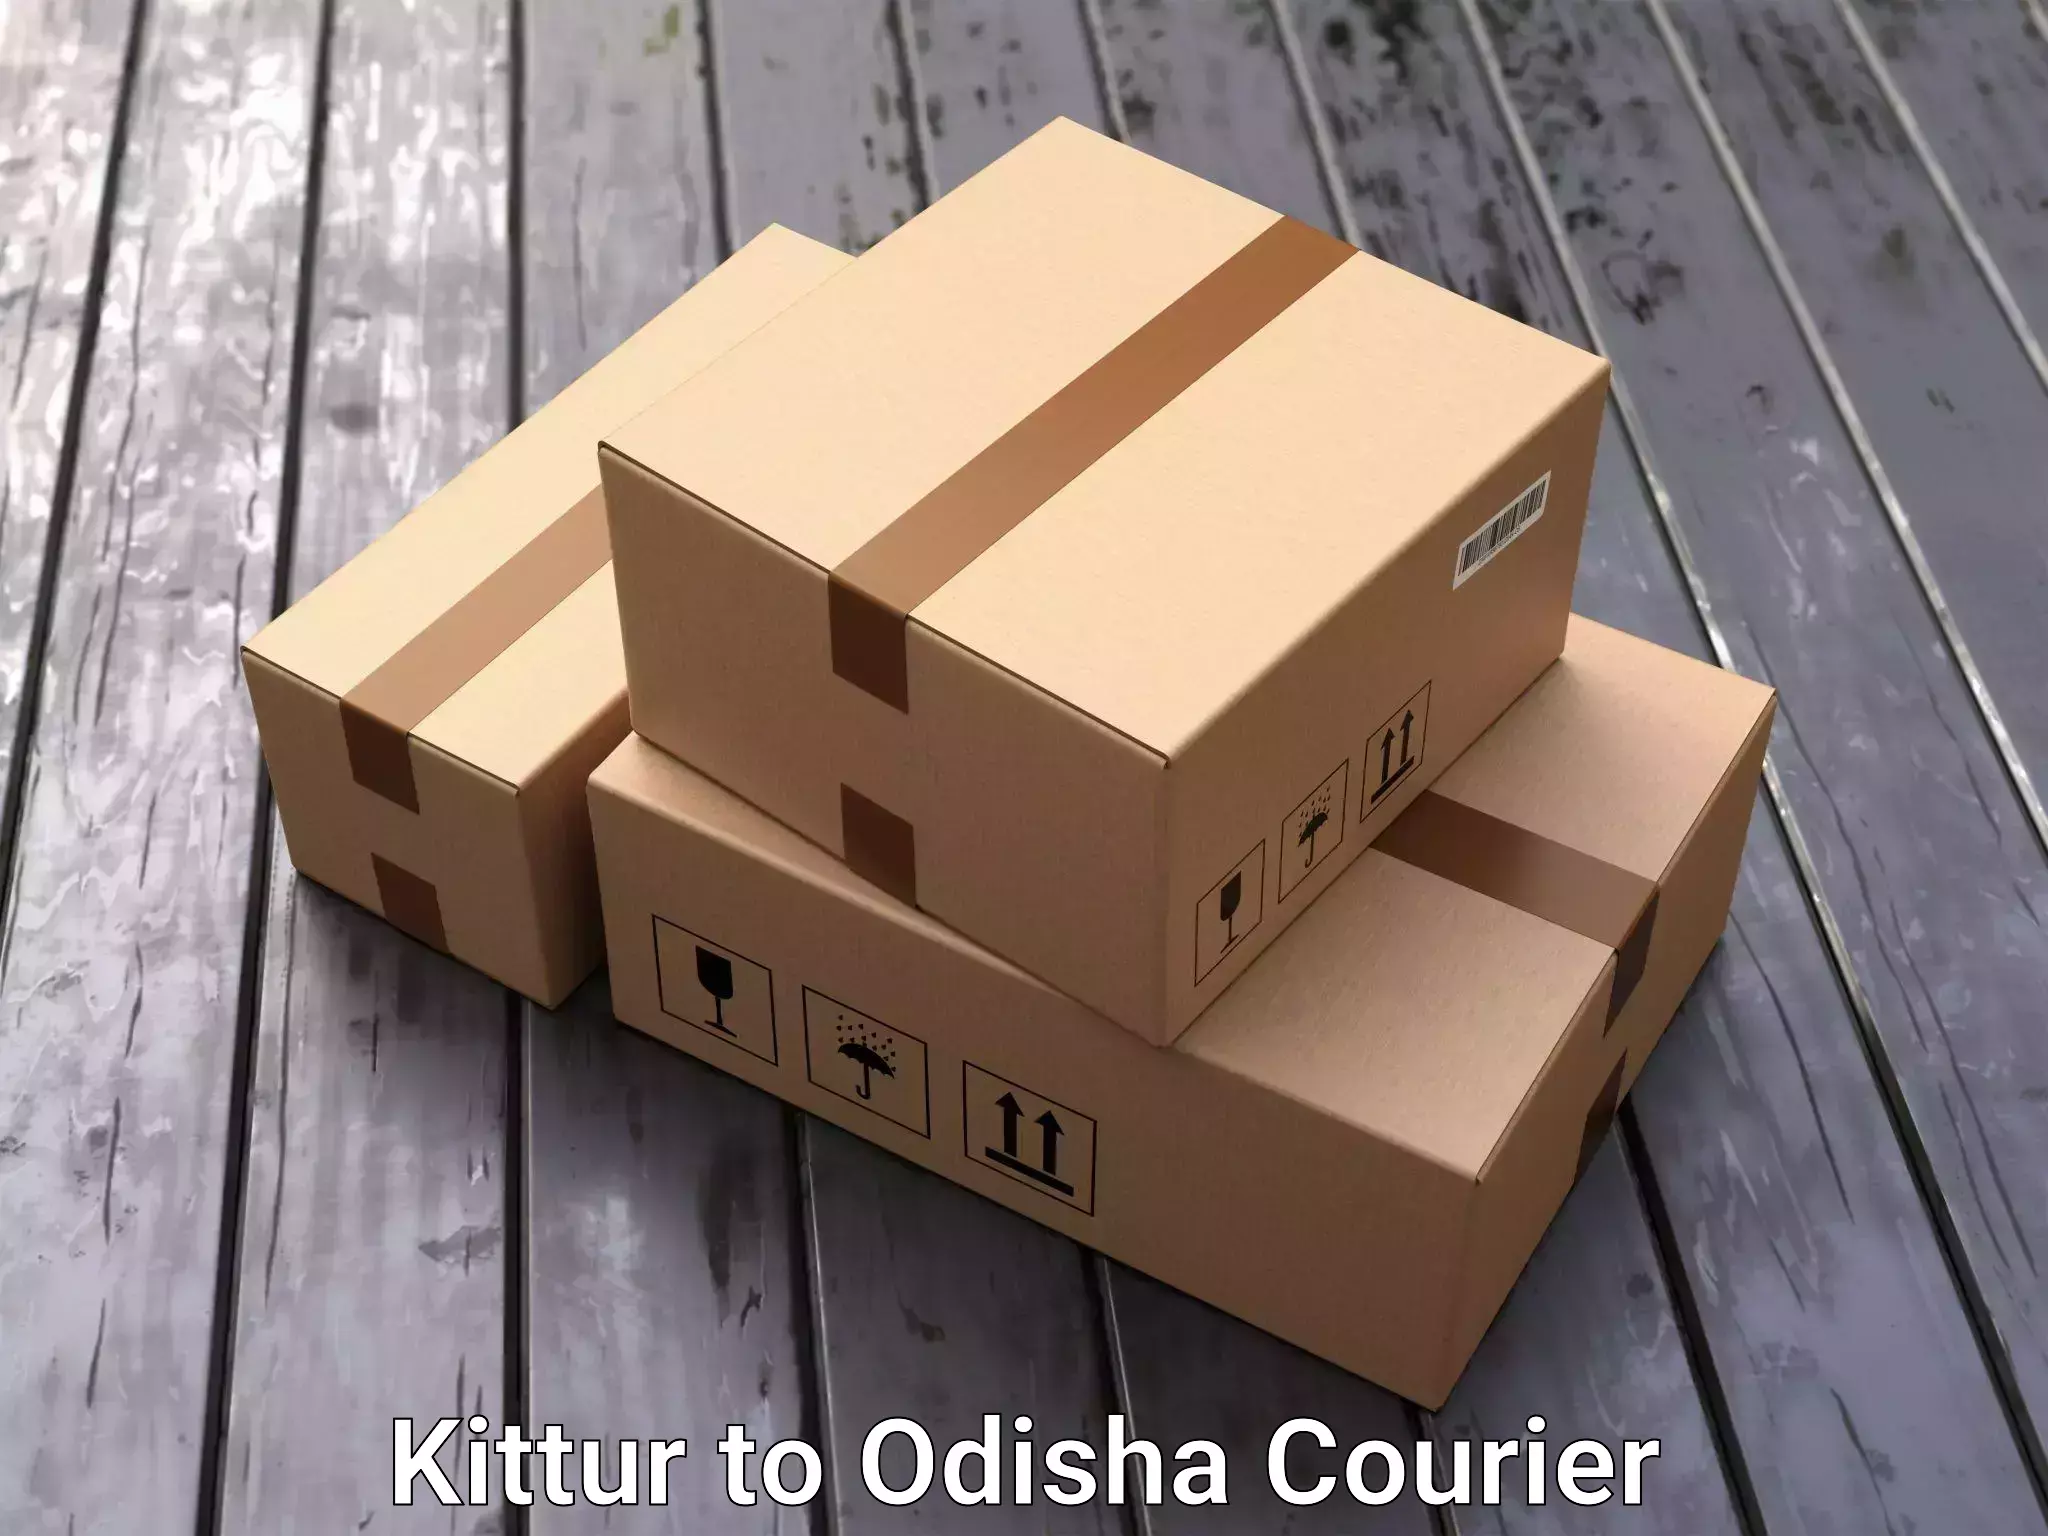 Furniture transport specialists Kittur to Odisha